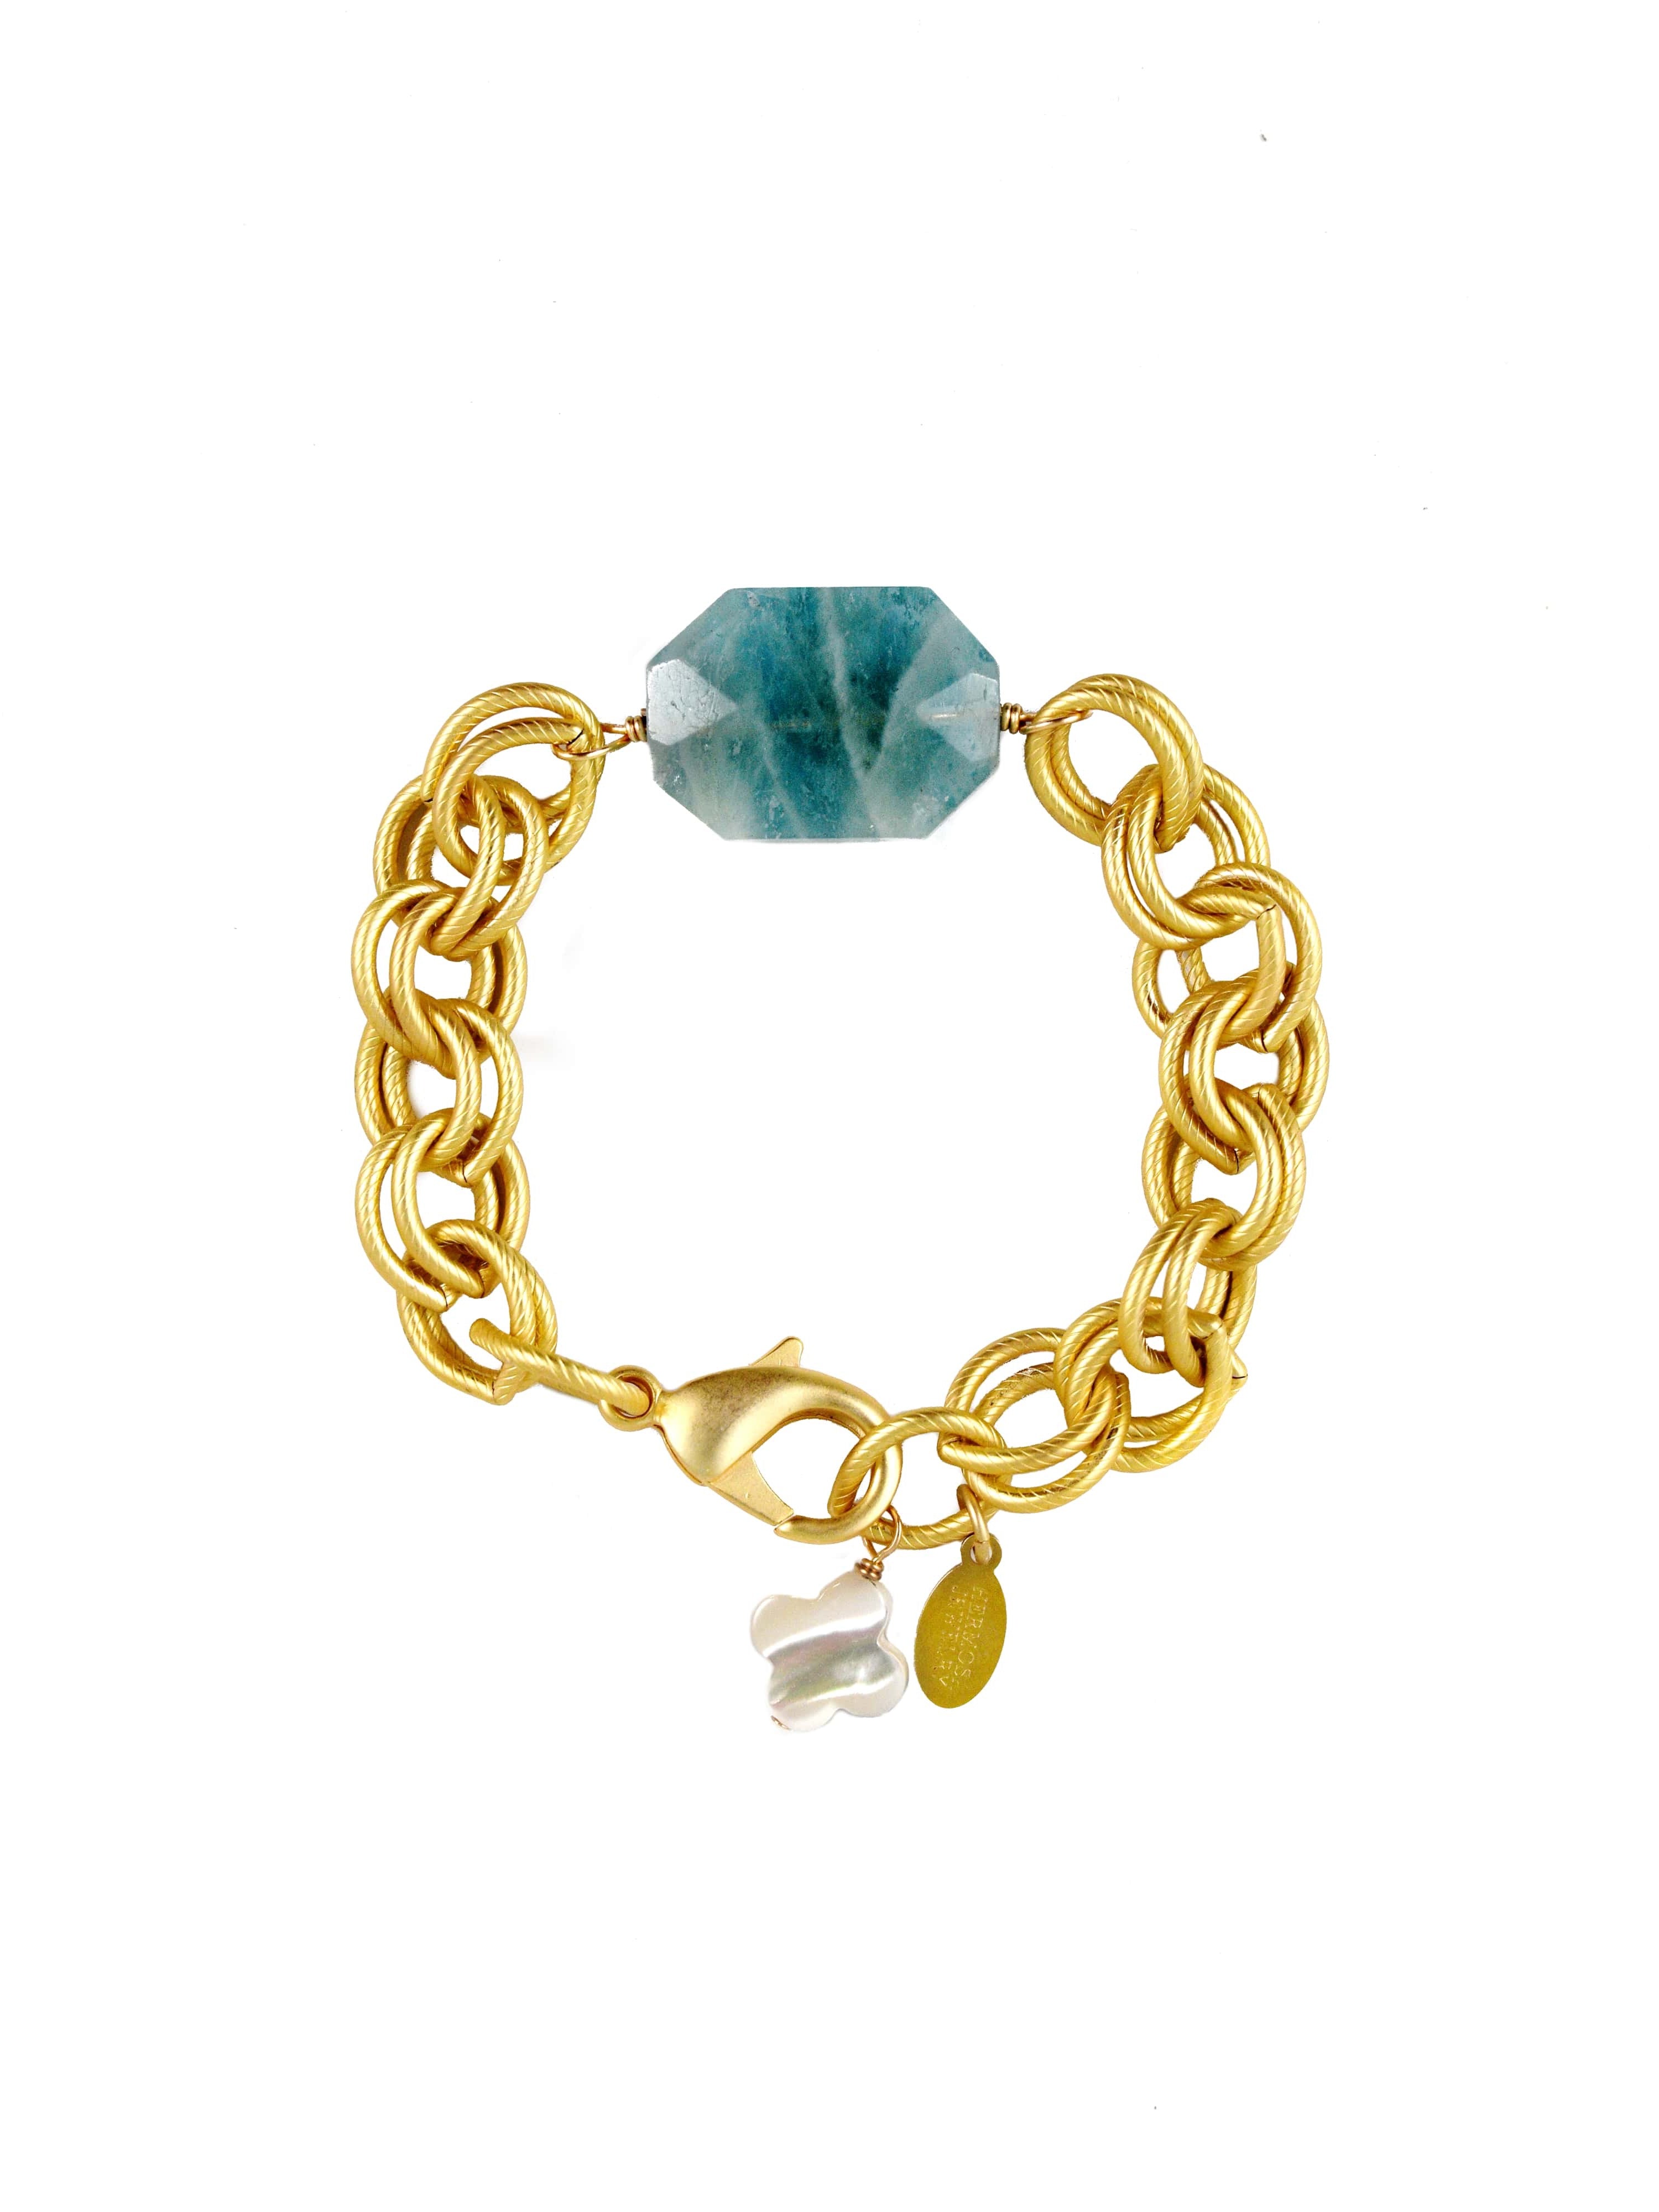 Tula Bracelet with Aquamarine